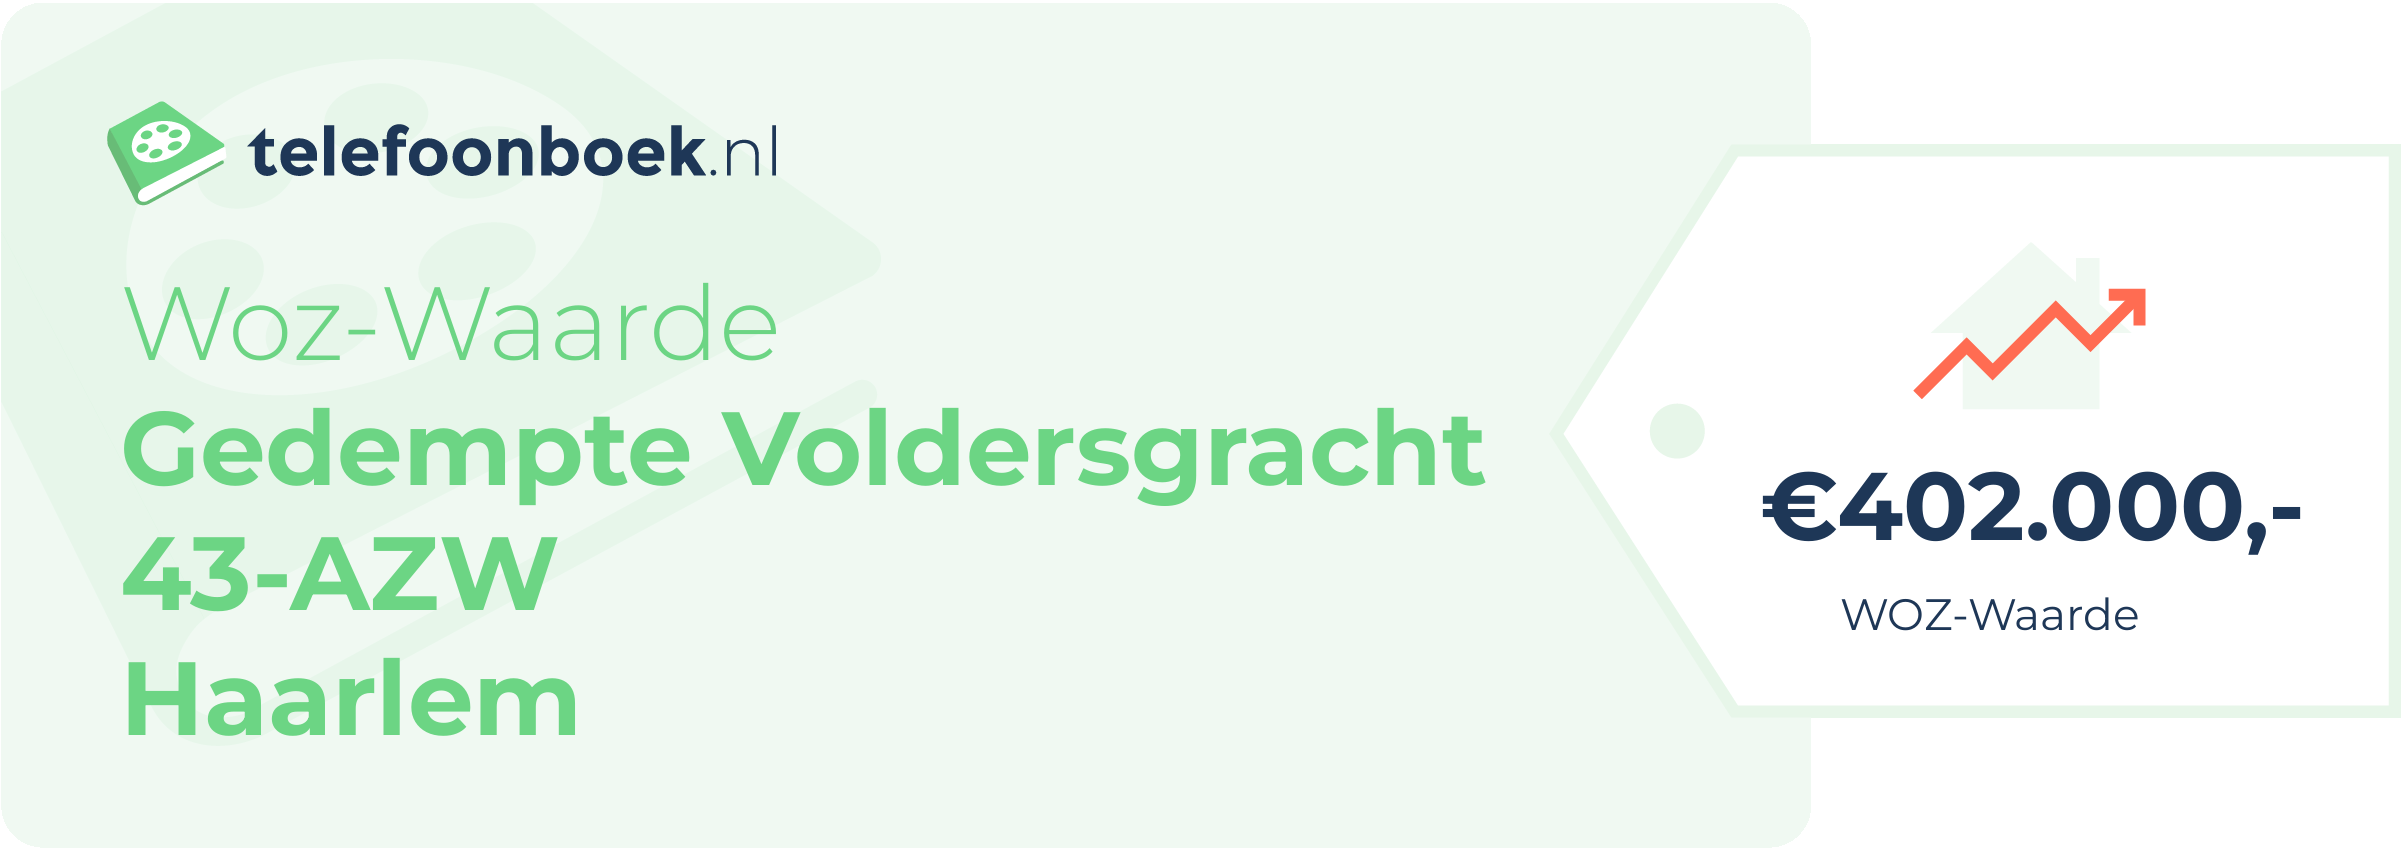 WOZ-waarde Gedempte Voldersgracht 43-AZW Haarlem